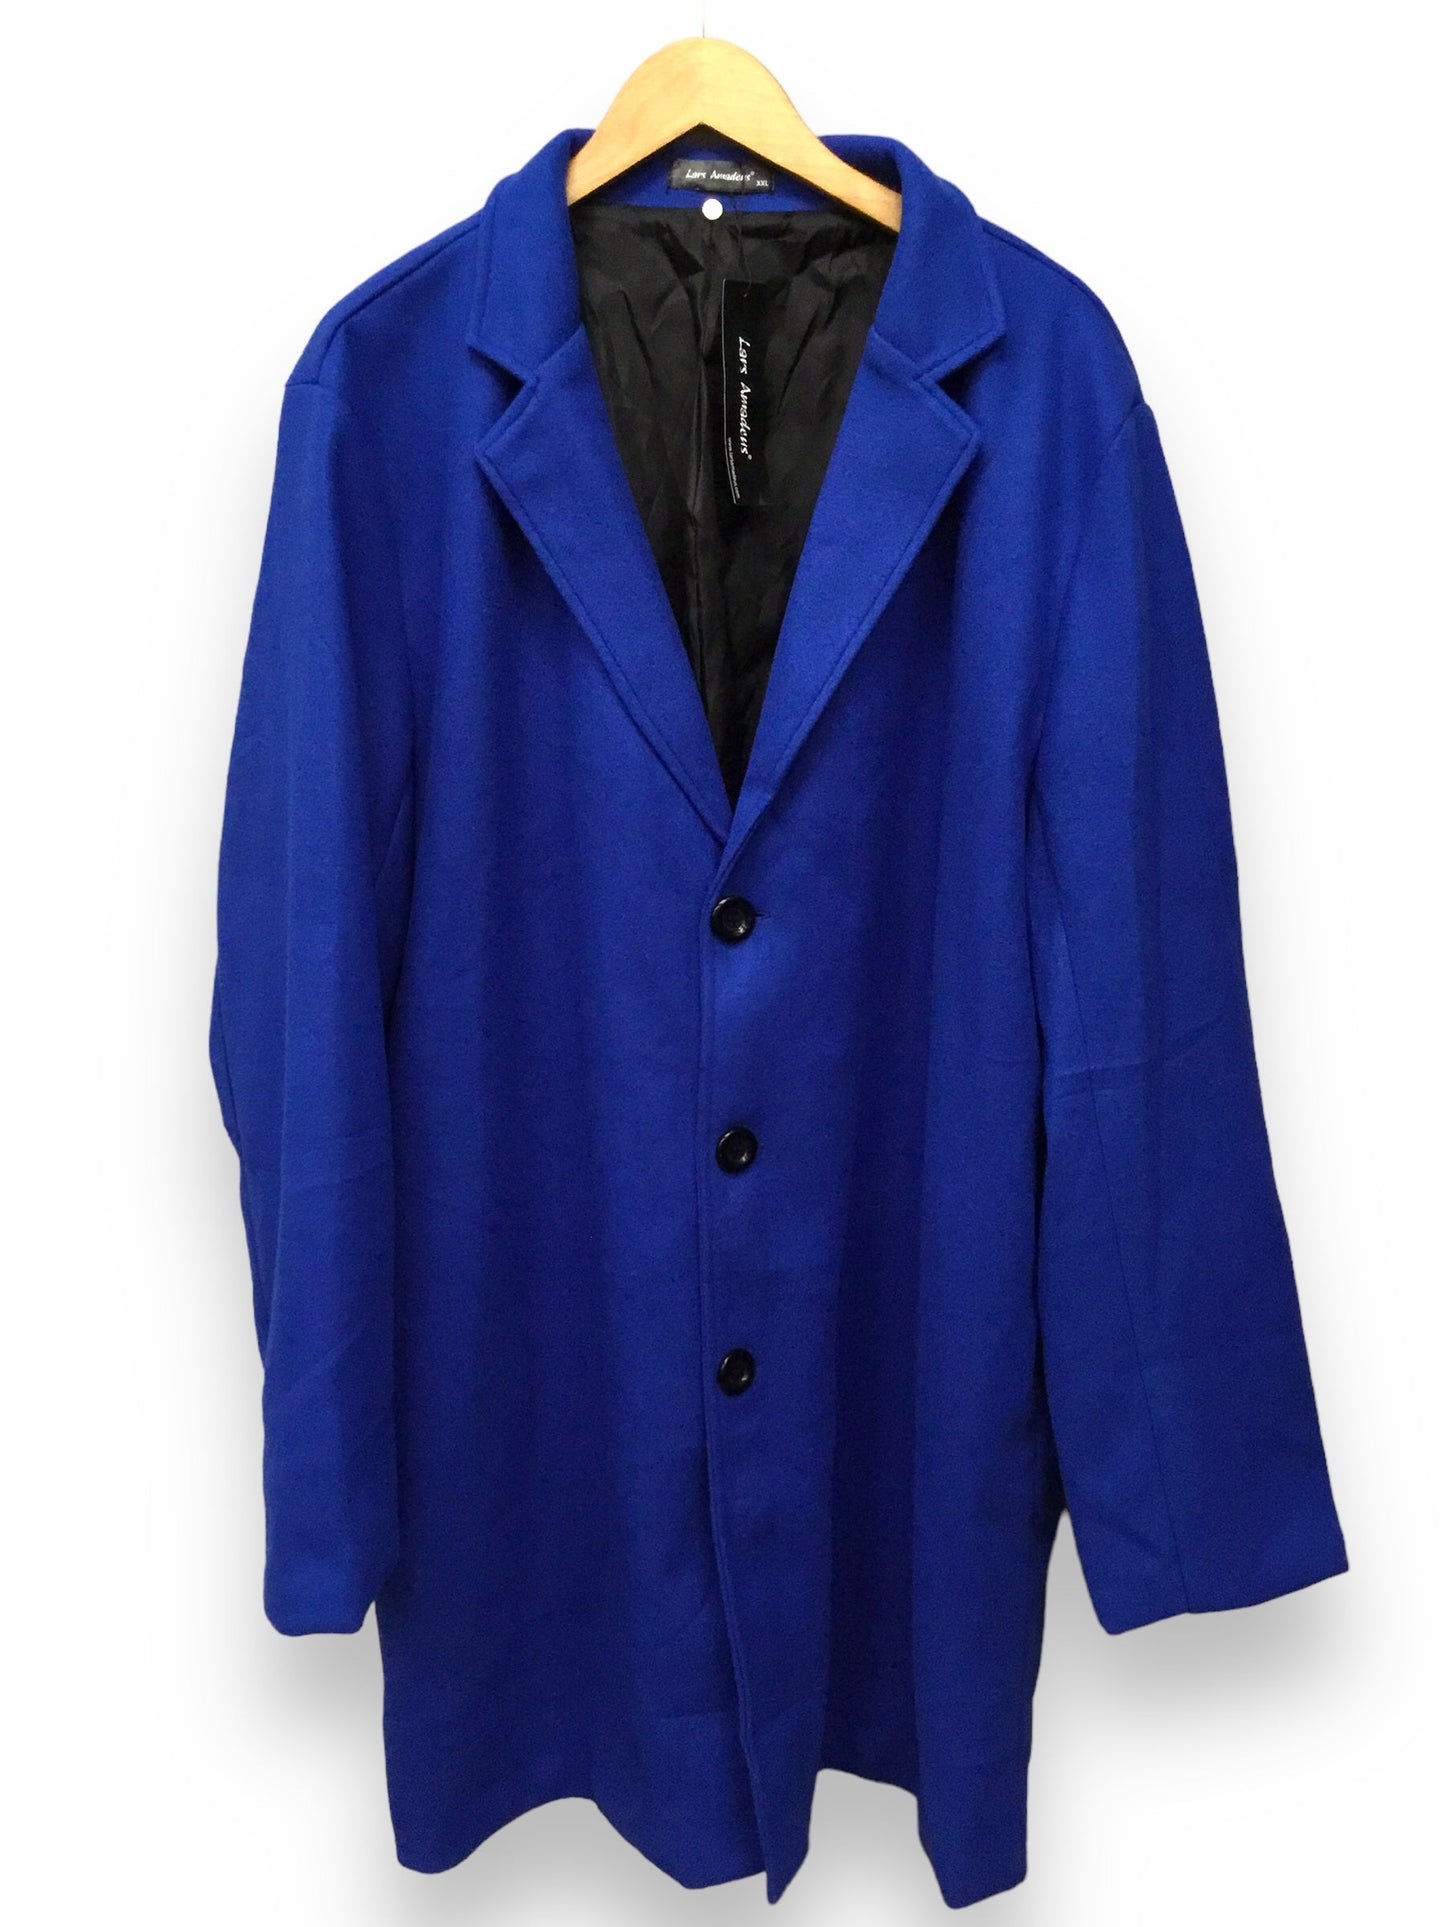 Blue Coat Peacoat Clothes Mentor, Size Xxl